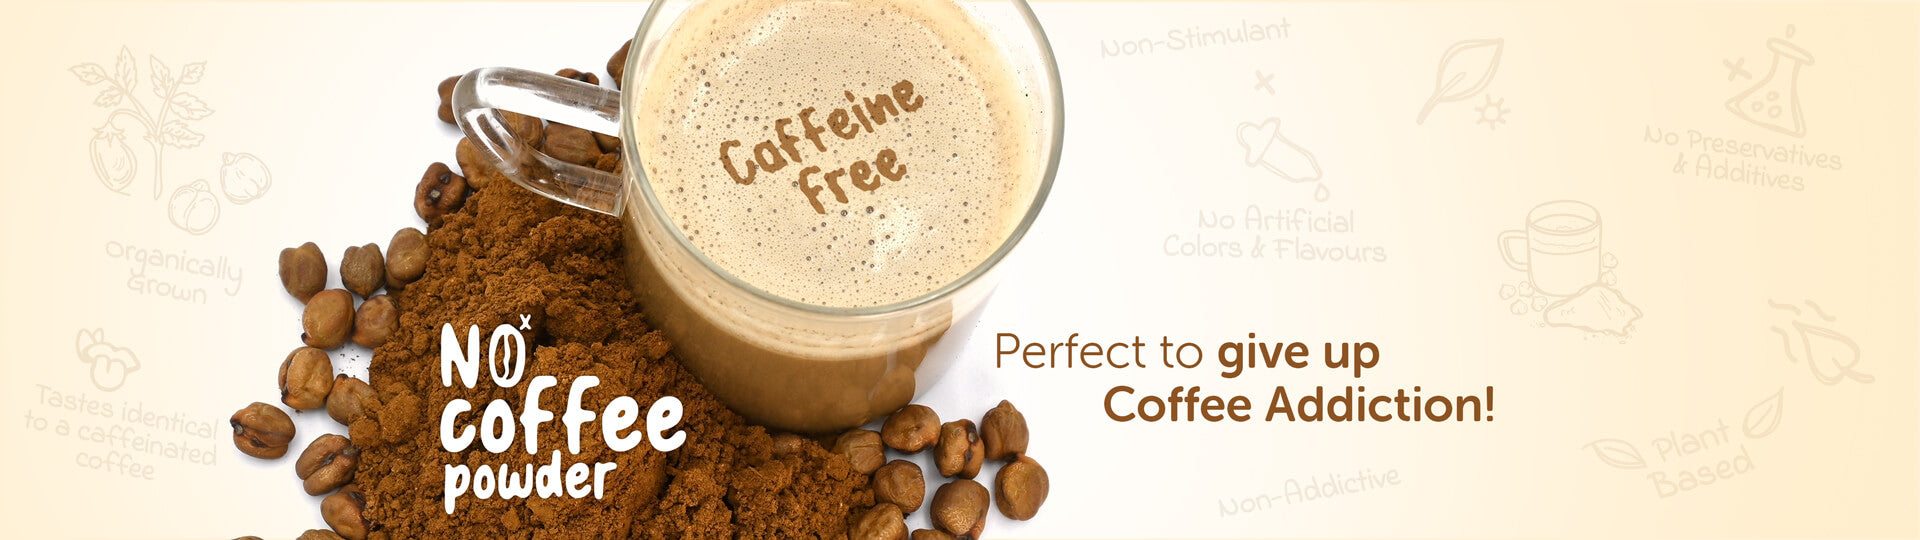 organic caffeine free coffee powder